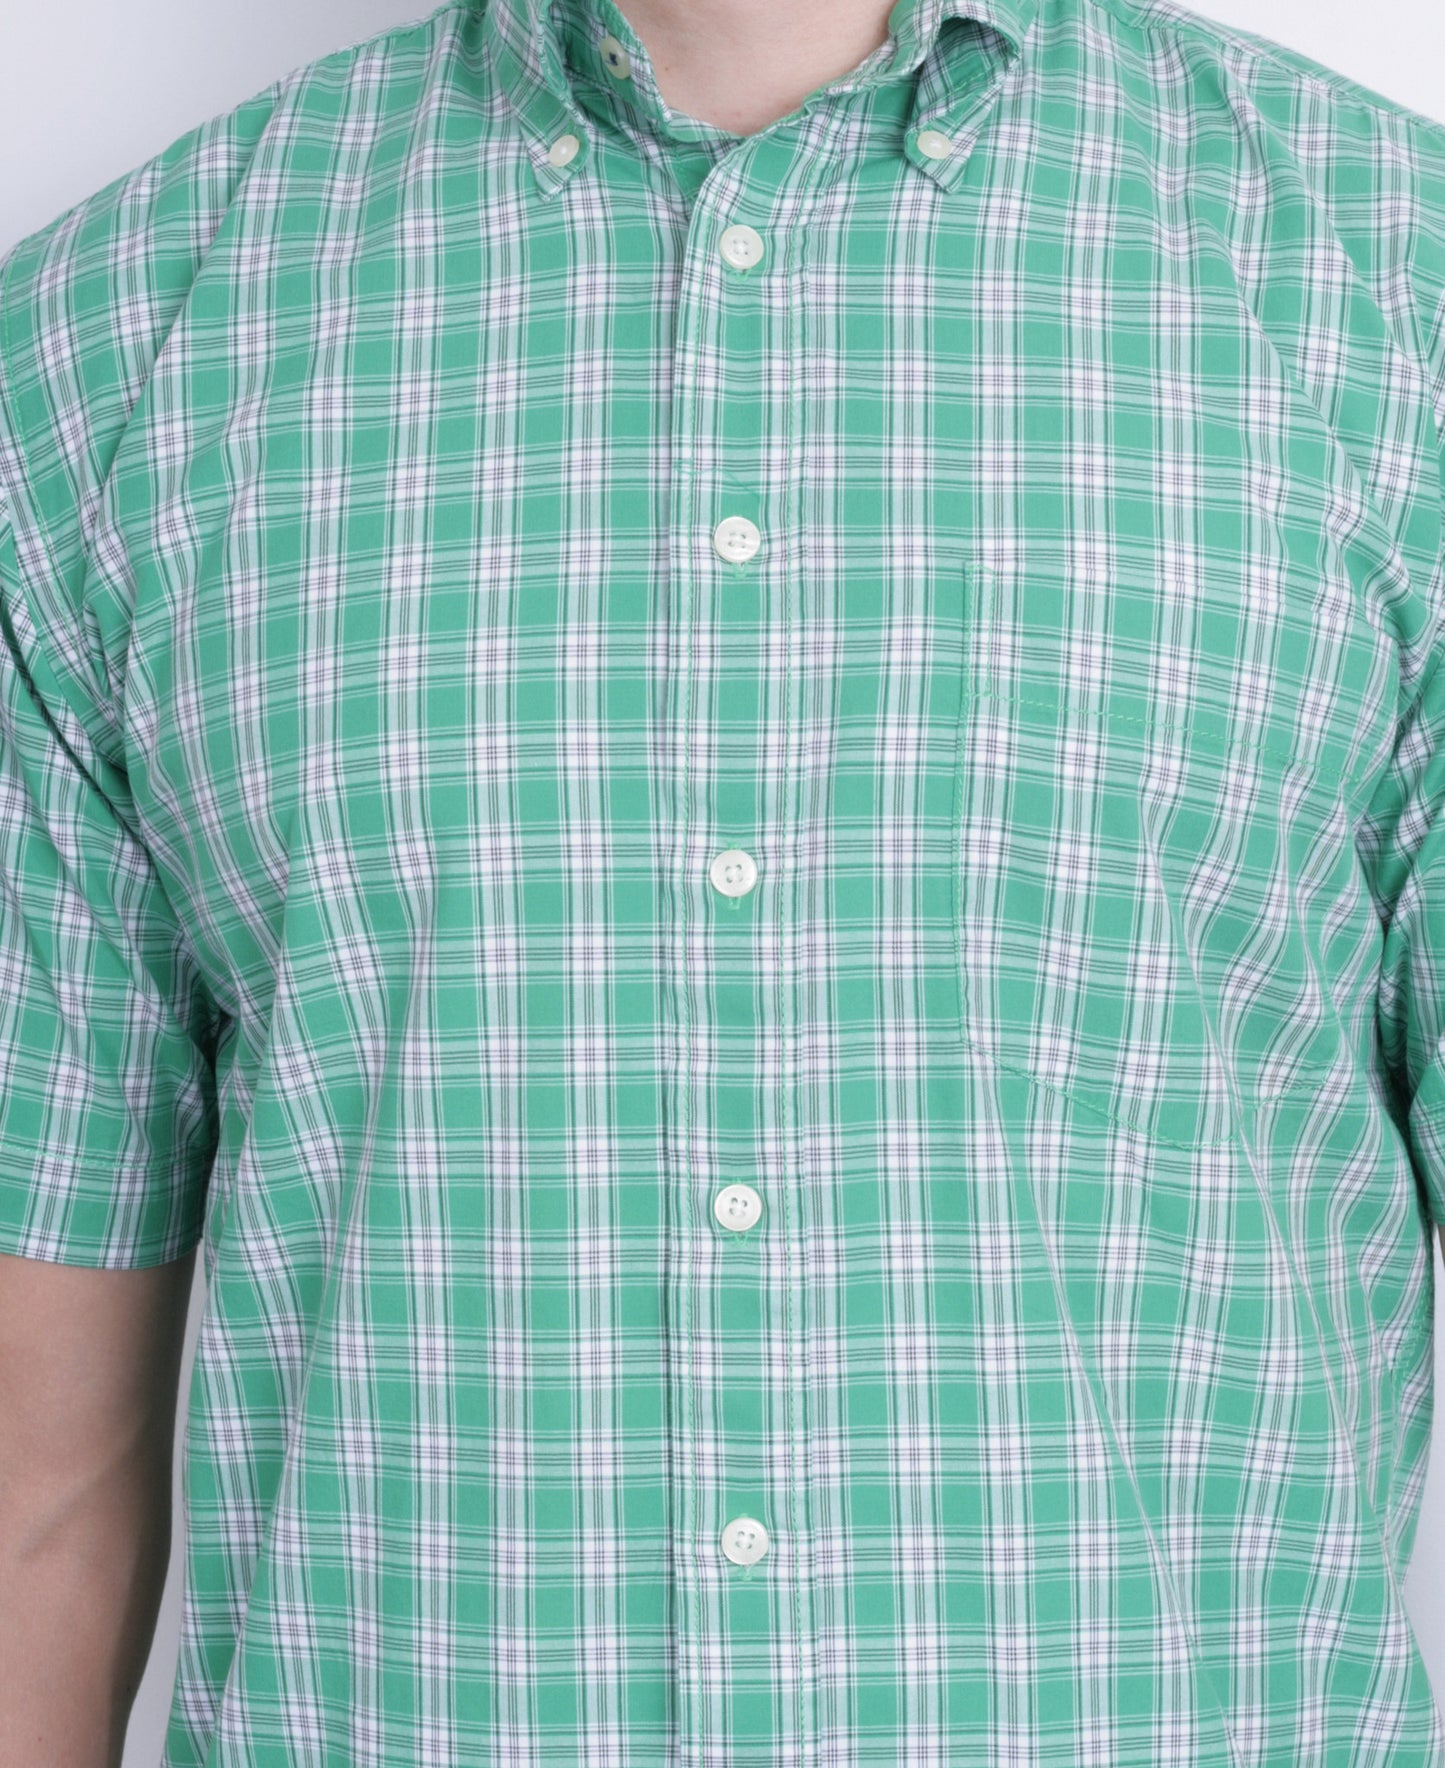 A.W. Dunmore Mens S Casual Shirt Green Check Cotton Short Sleeve - RetrospectClothes